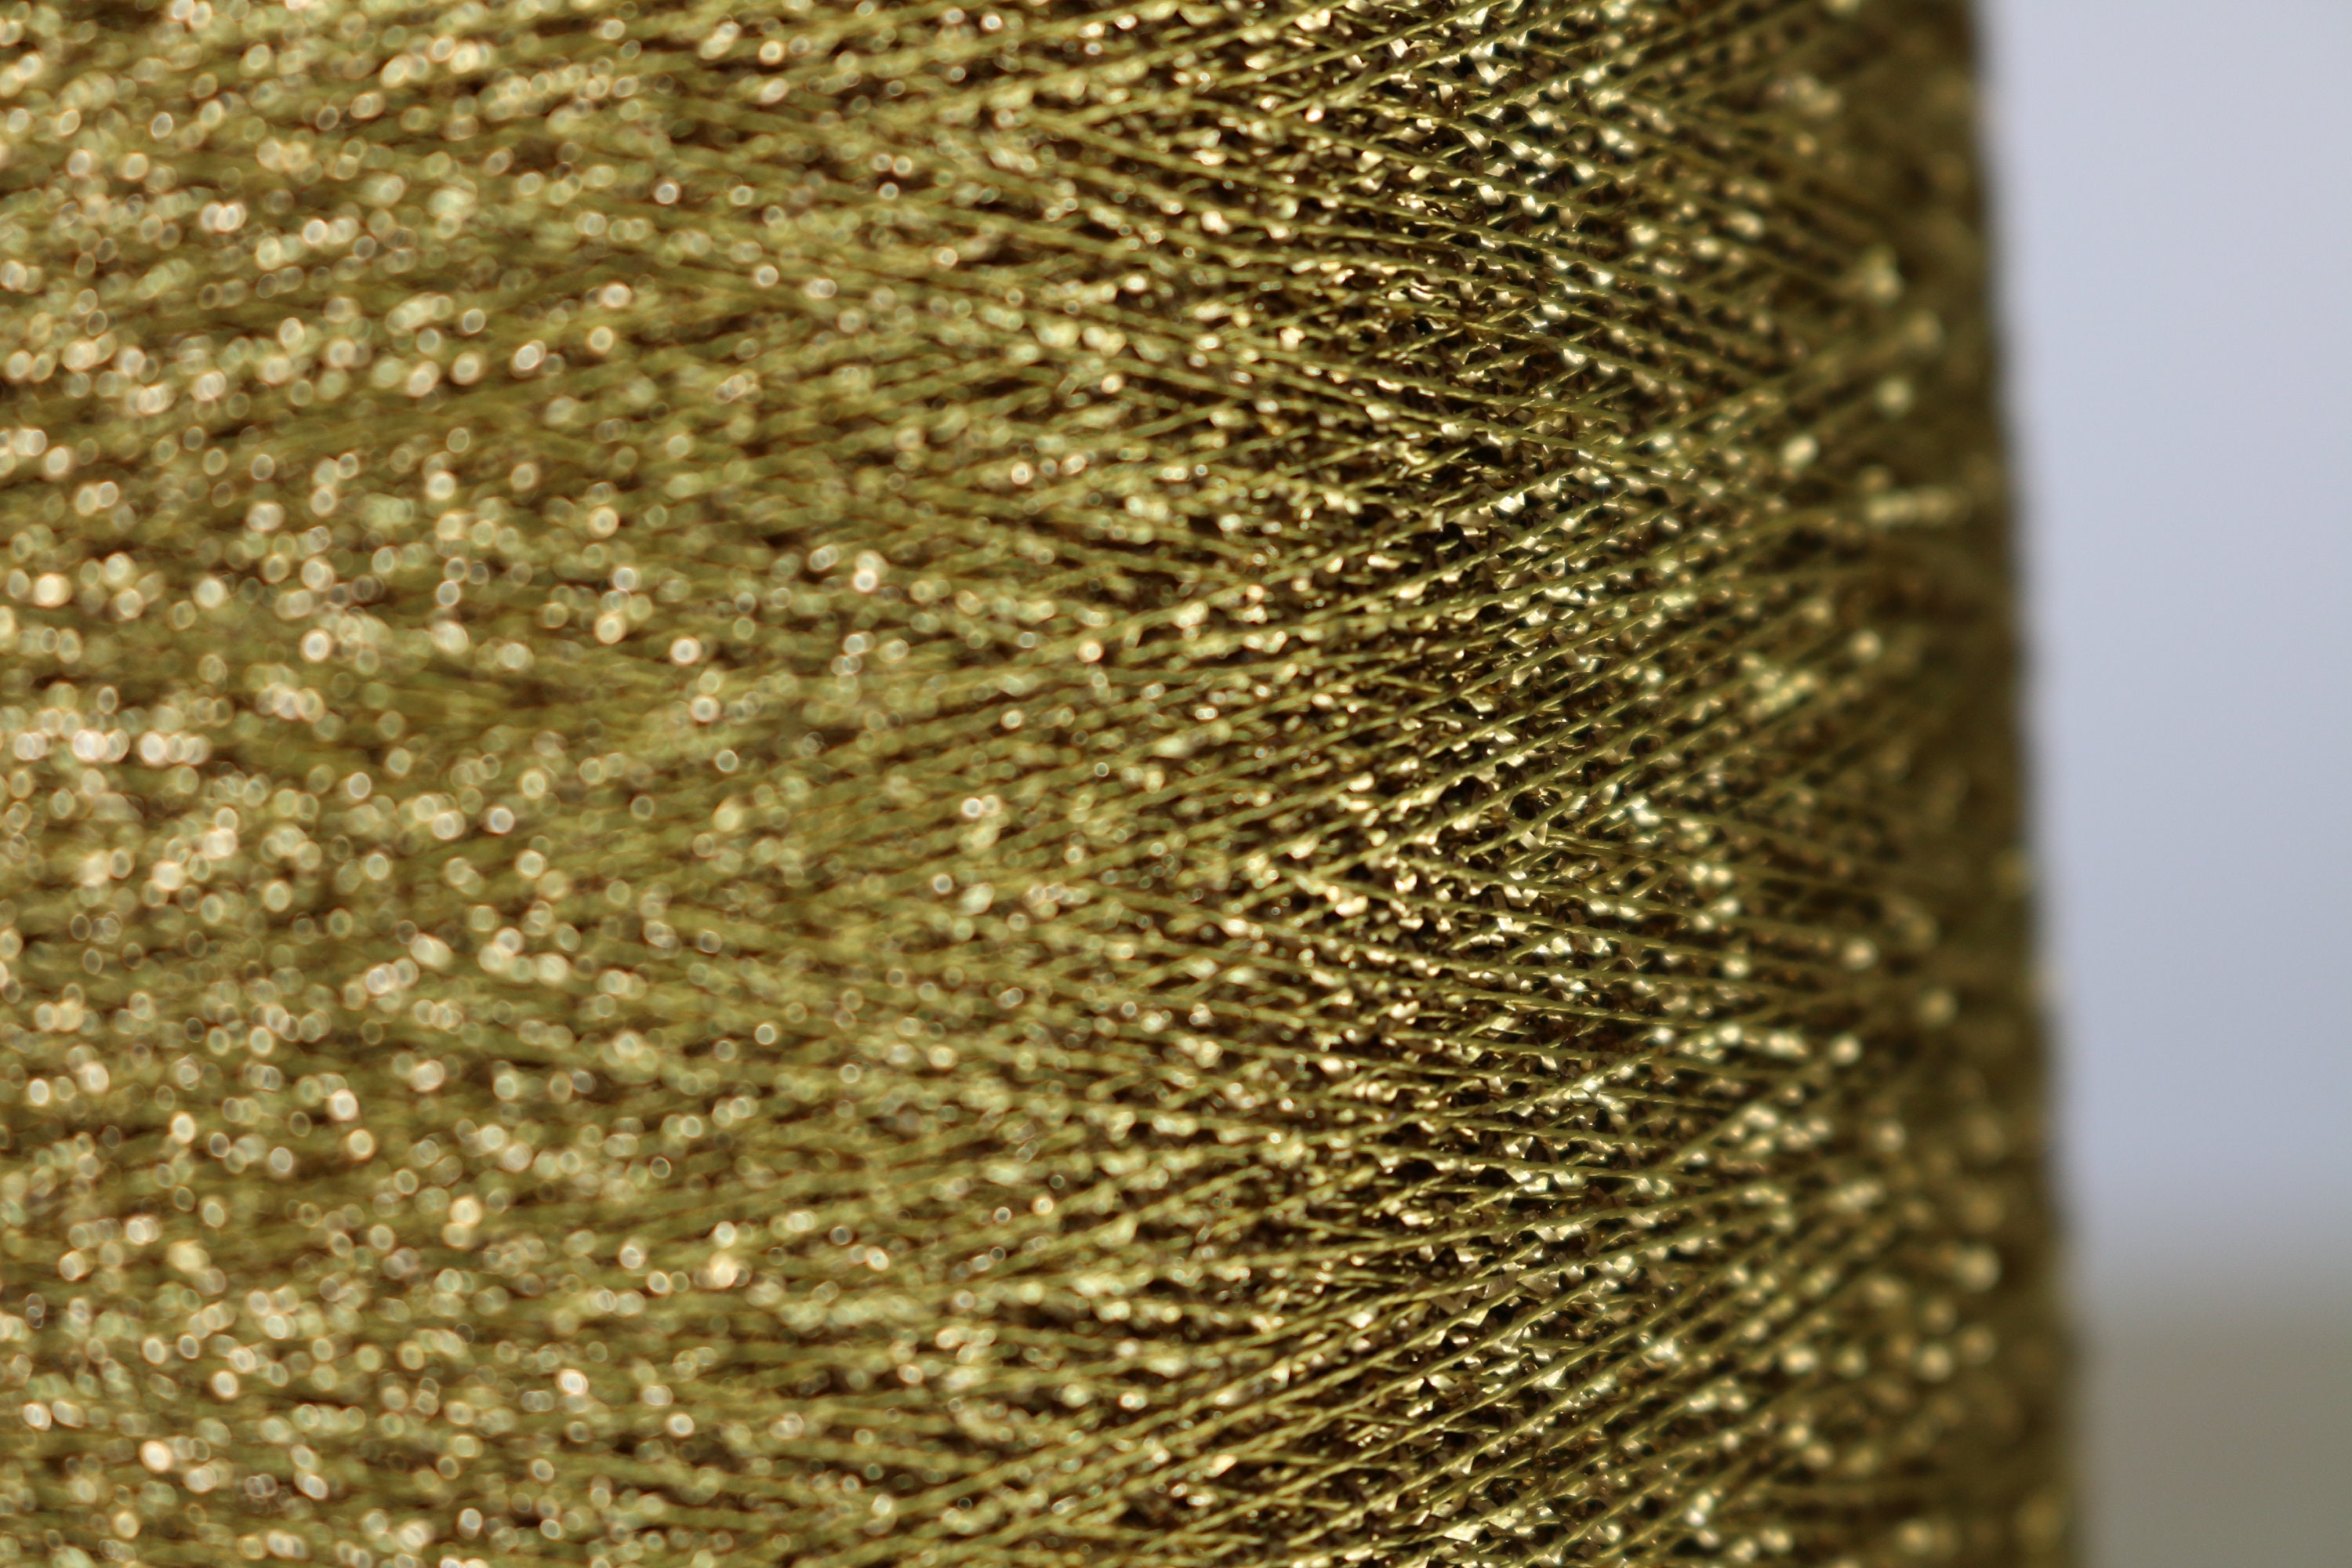  250g Sparkle Crochet Yarn Gold Copper Shiny Thread Galaxy Yarn  Metallic Yarn Glitter Lurex Yarn Fashion Yarn Decorations Yarn Knitting  Crocheting Accessories Yarn Ball